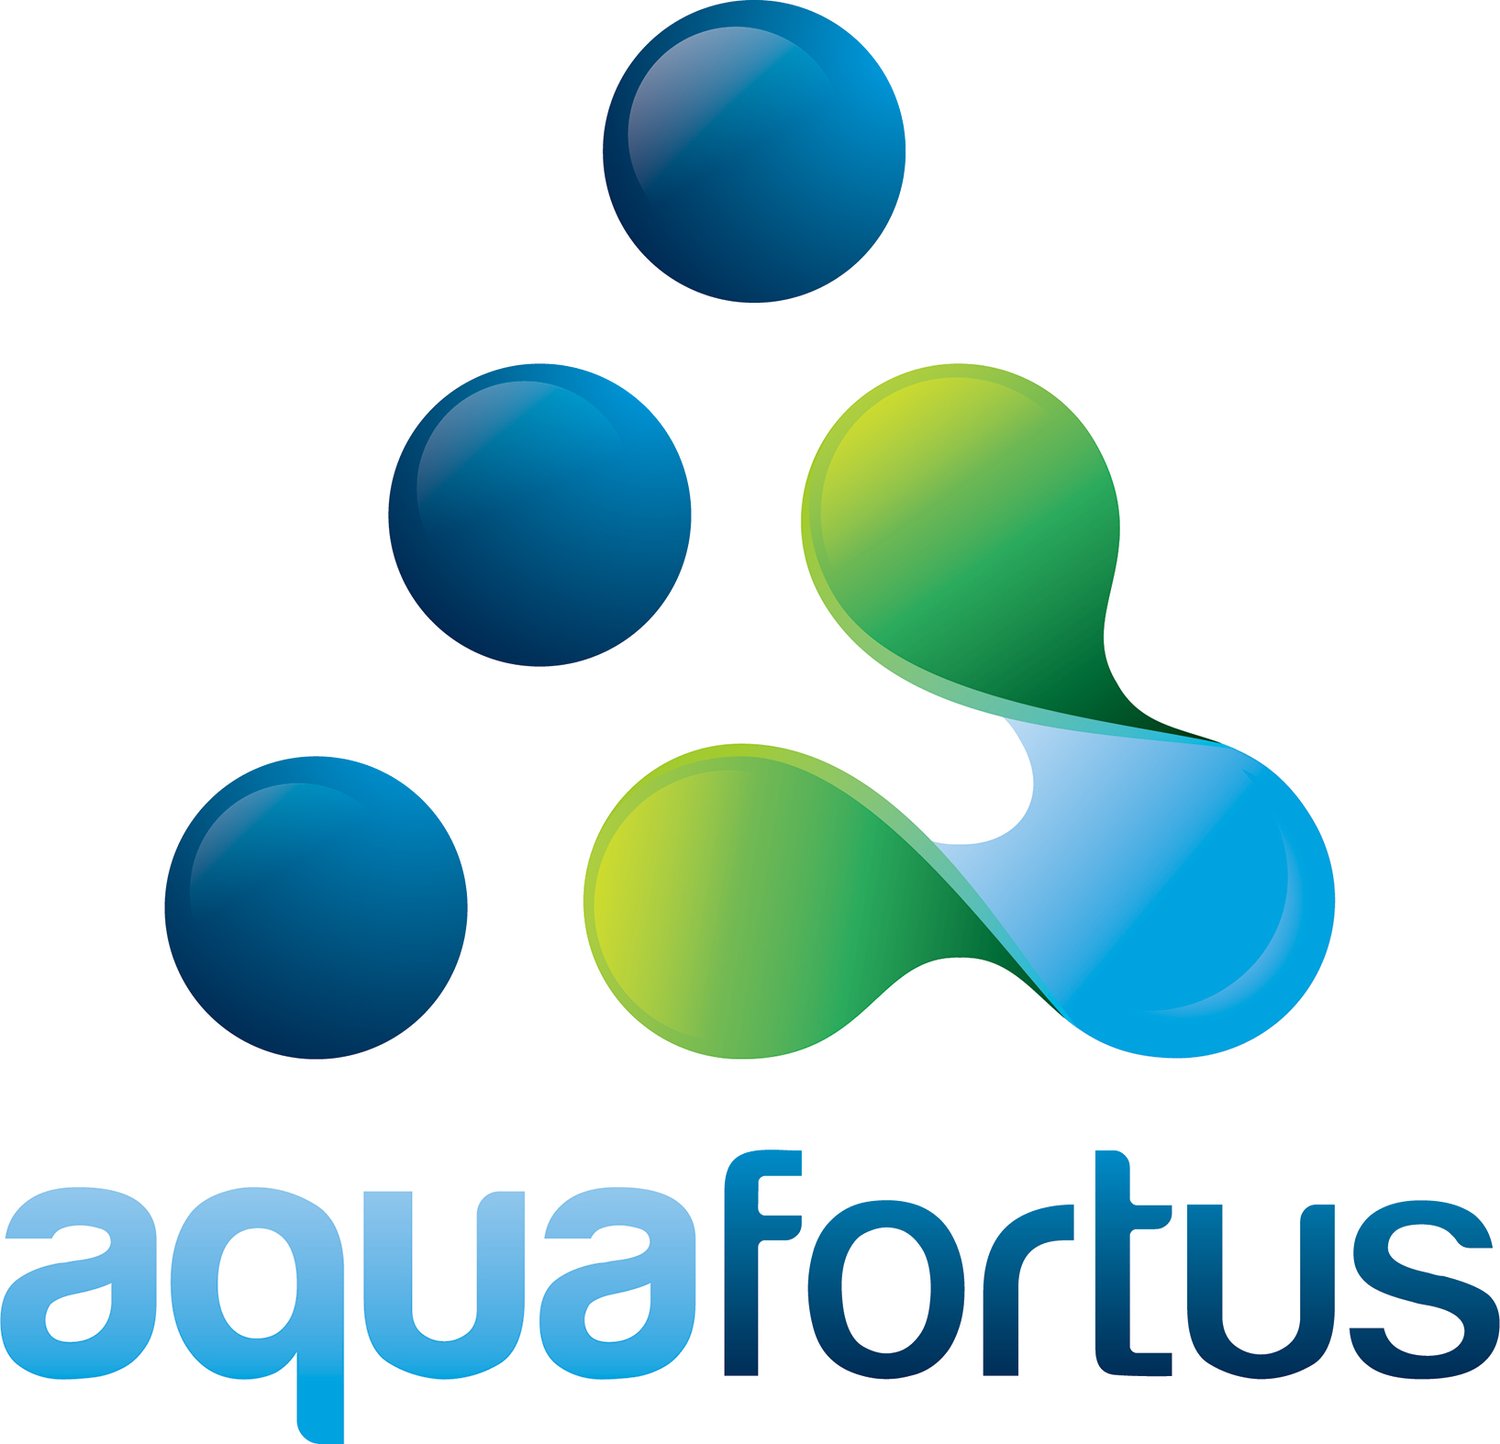 aquafortus